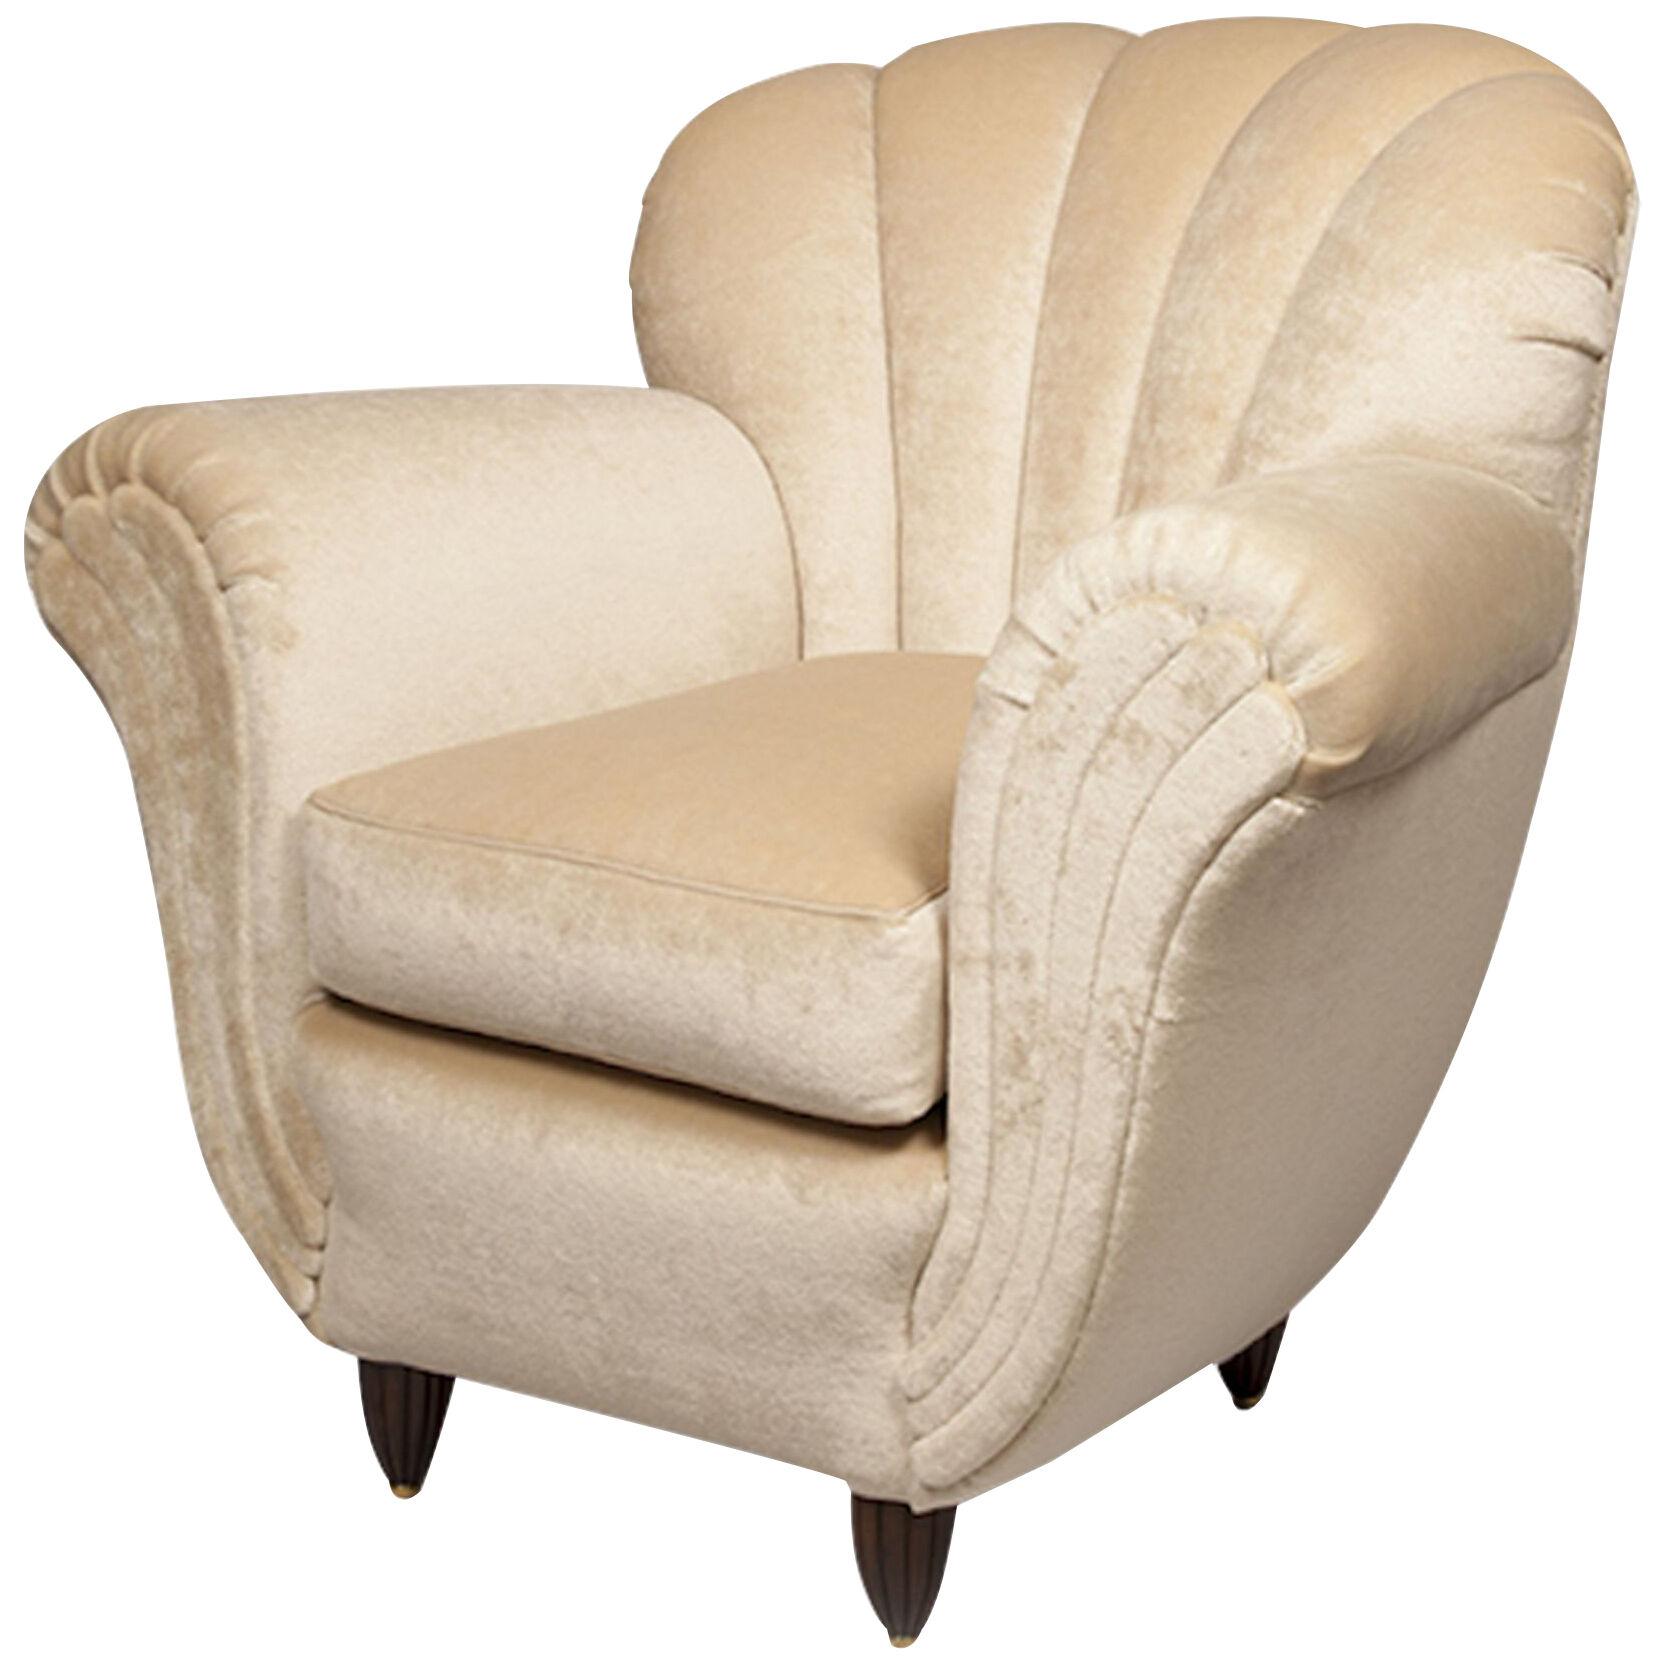 An Art Deco Style Armchair by ILIAD Design